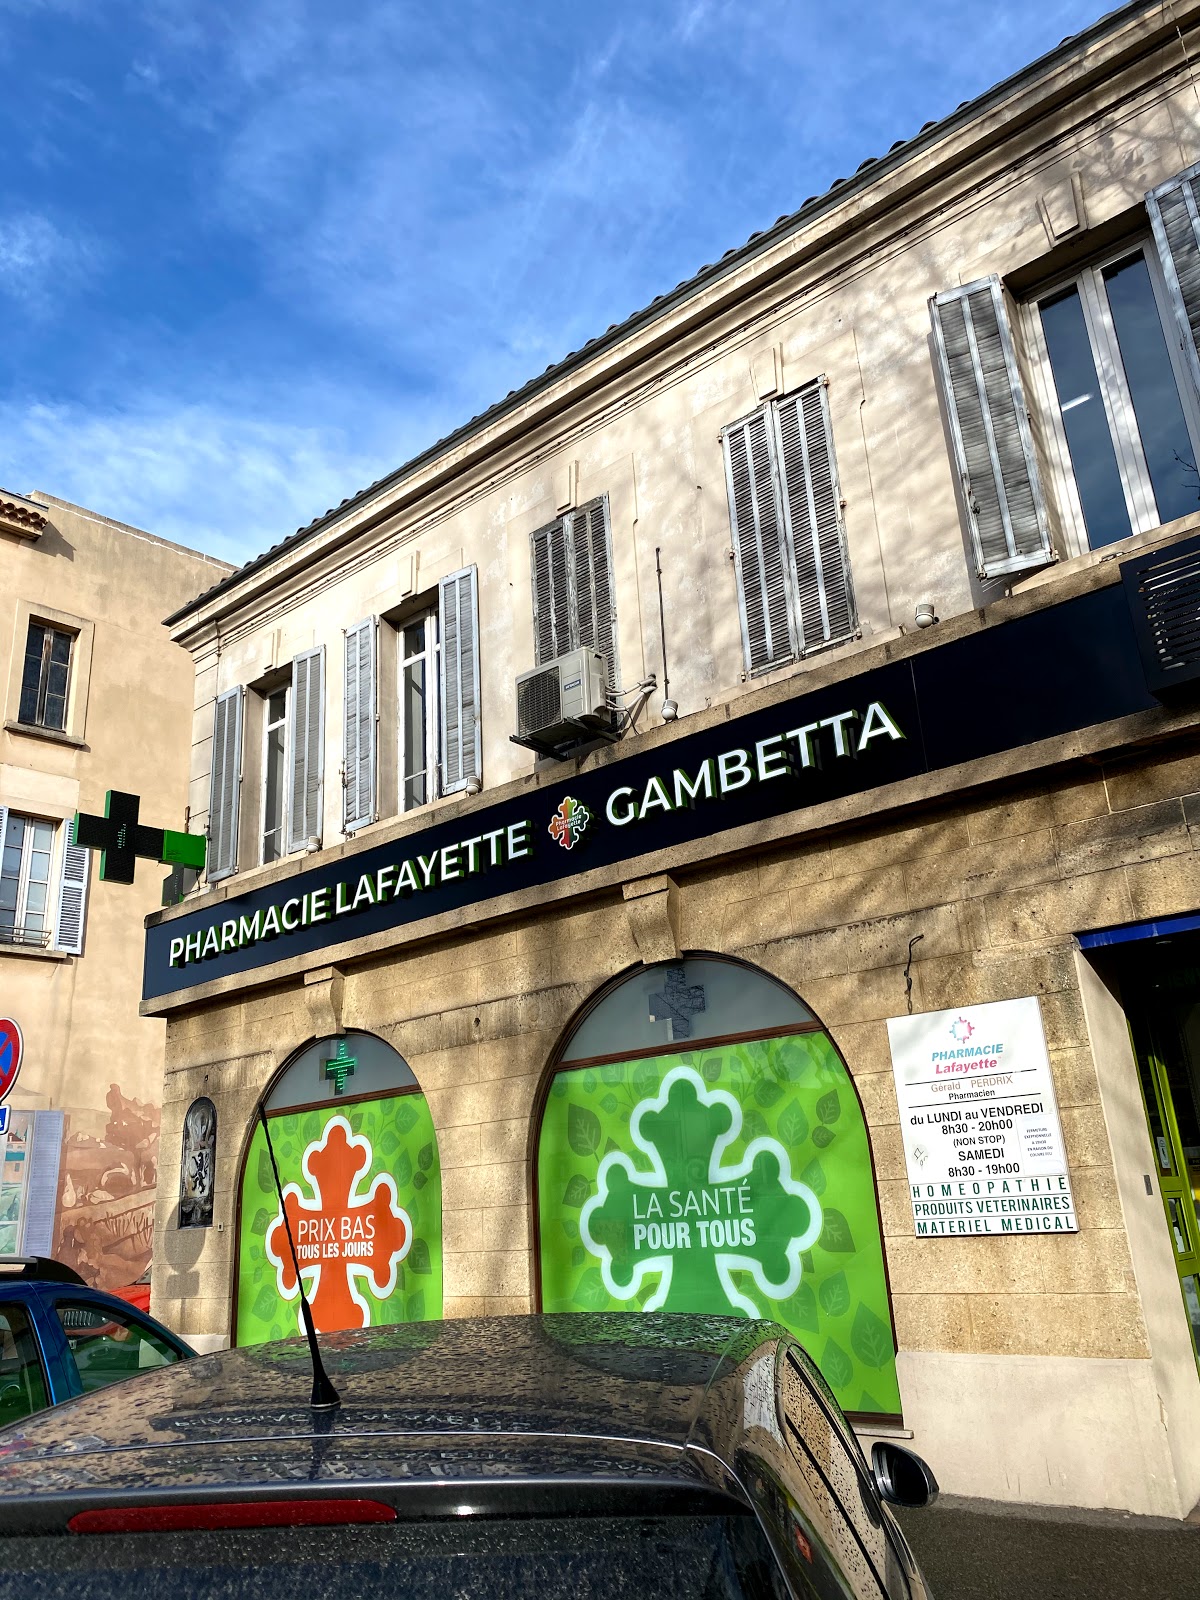 Pharmacie Lafayette Gambetta